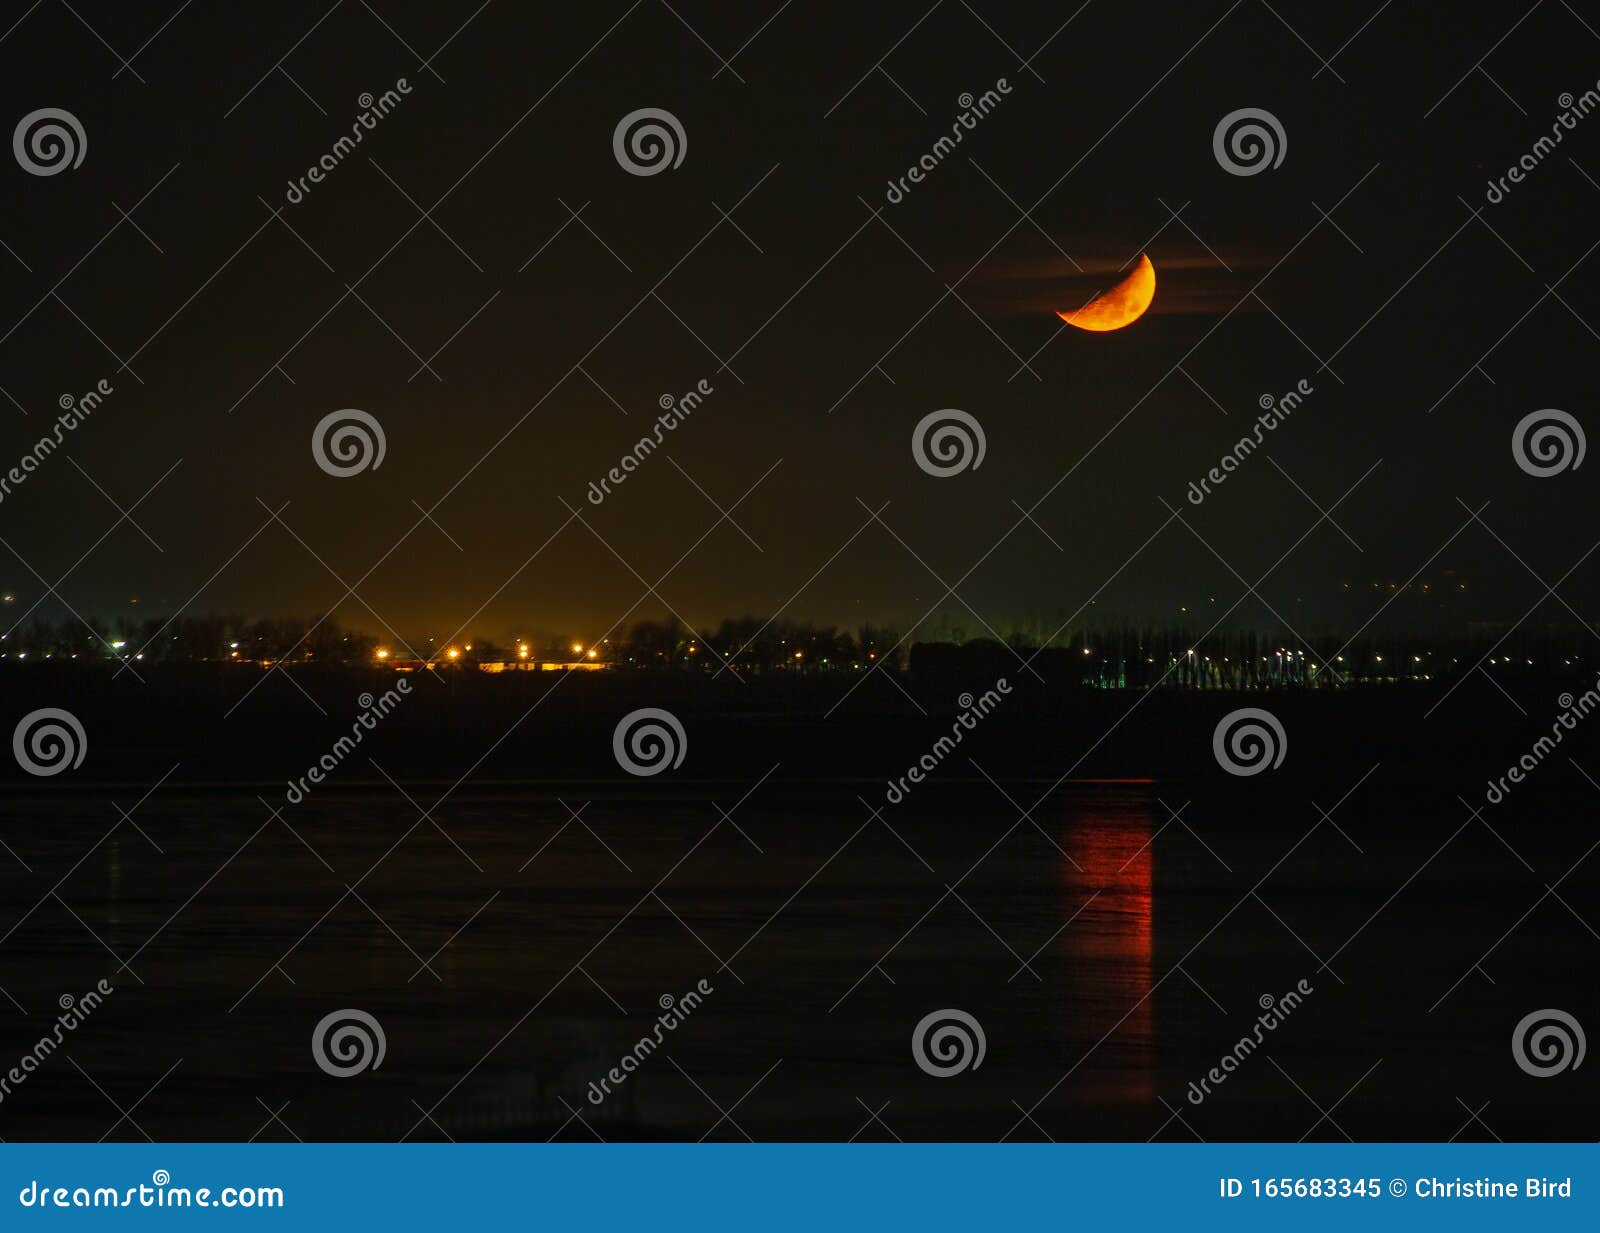 英国肯特郡佩格威尔湾上空半月亮的夜景 与海中月亮的映照库存图片 图片包括有金黄 地平线